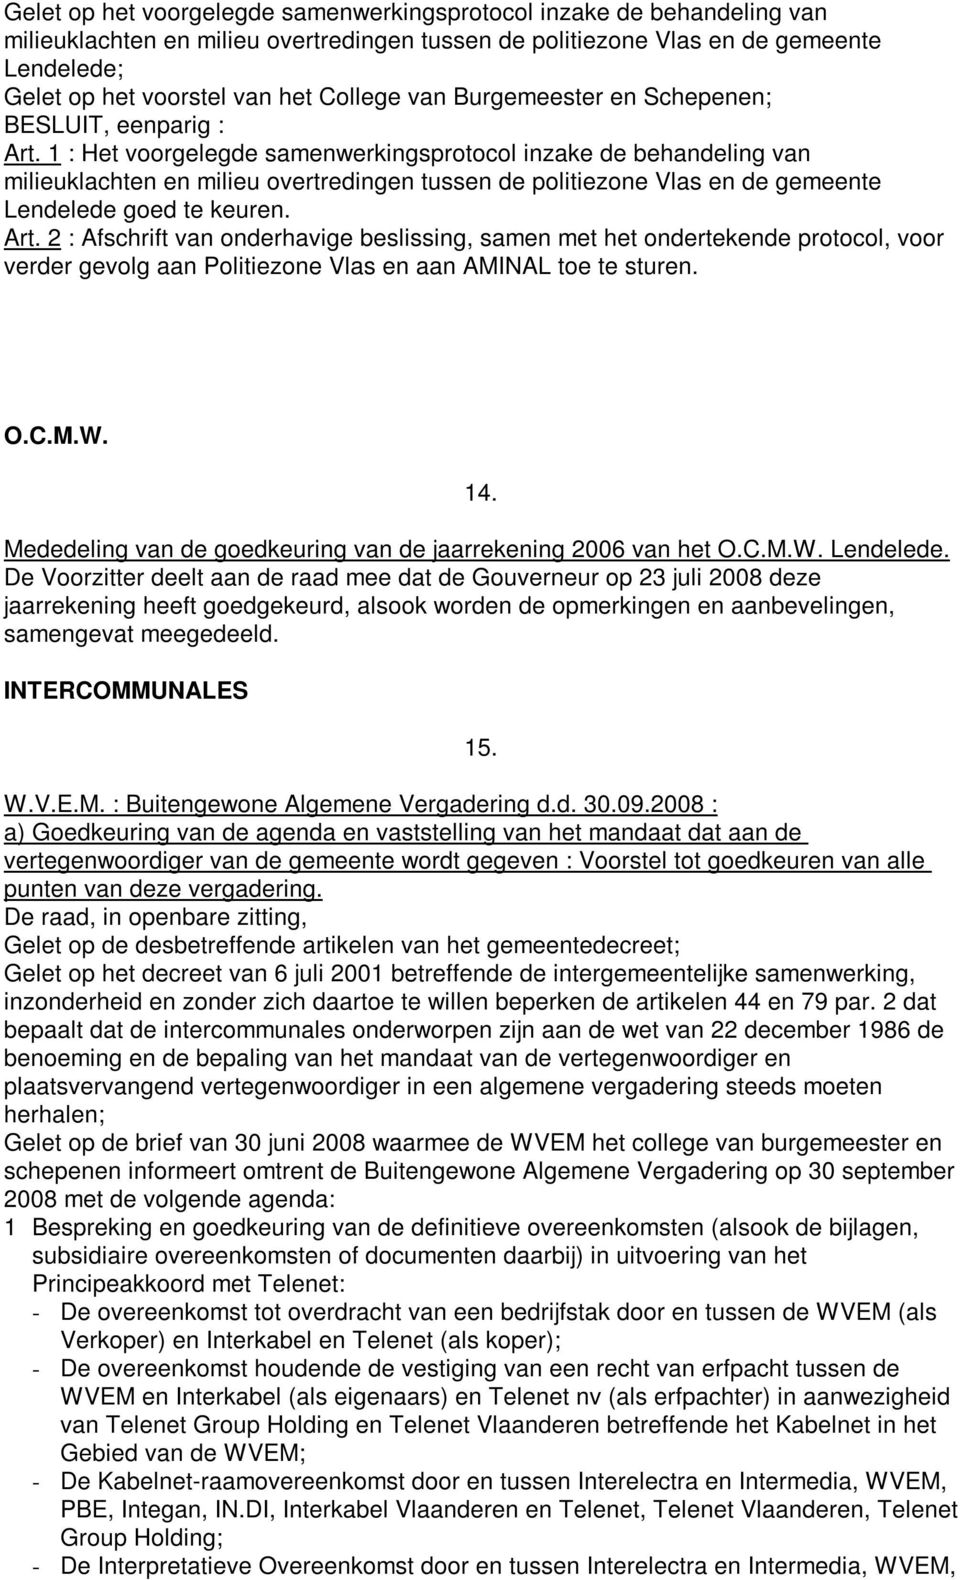 1 : Het voorgelegde samenwerkingsprotocol inzake de behandeling van milieuklachten en milieu overtredingen tussen de politiezone Vlas en de gemeente Lendelede goed te keuren. Art.